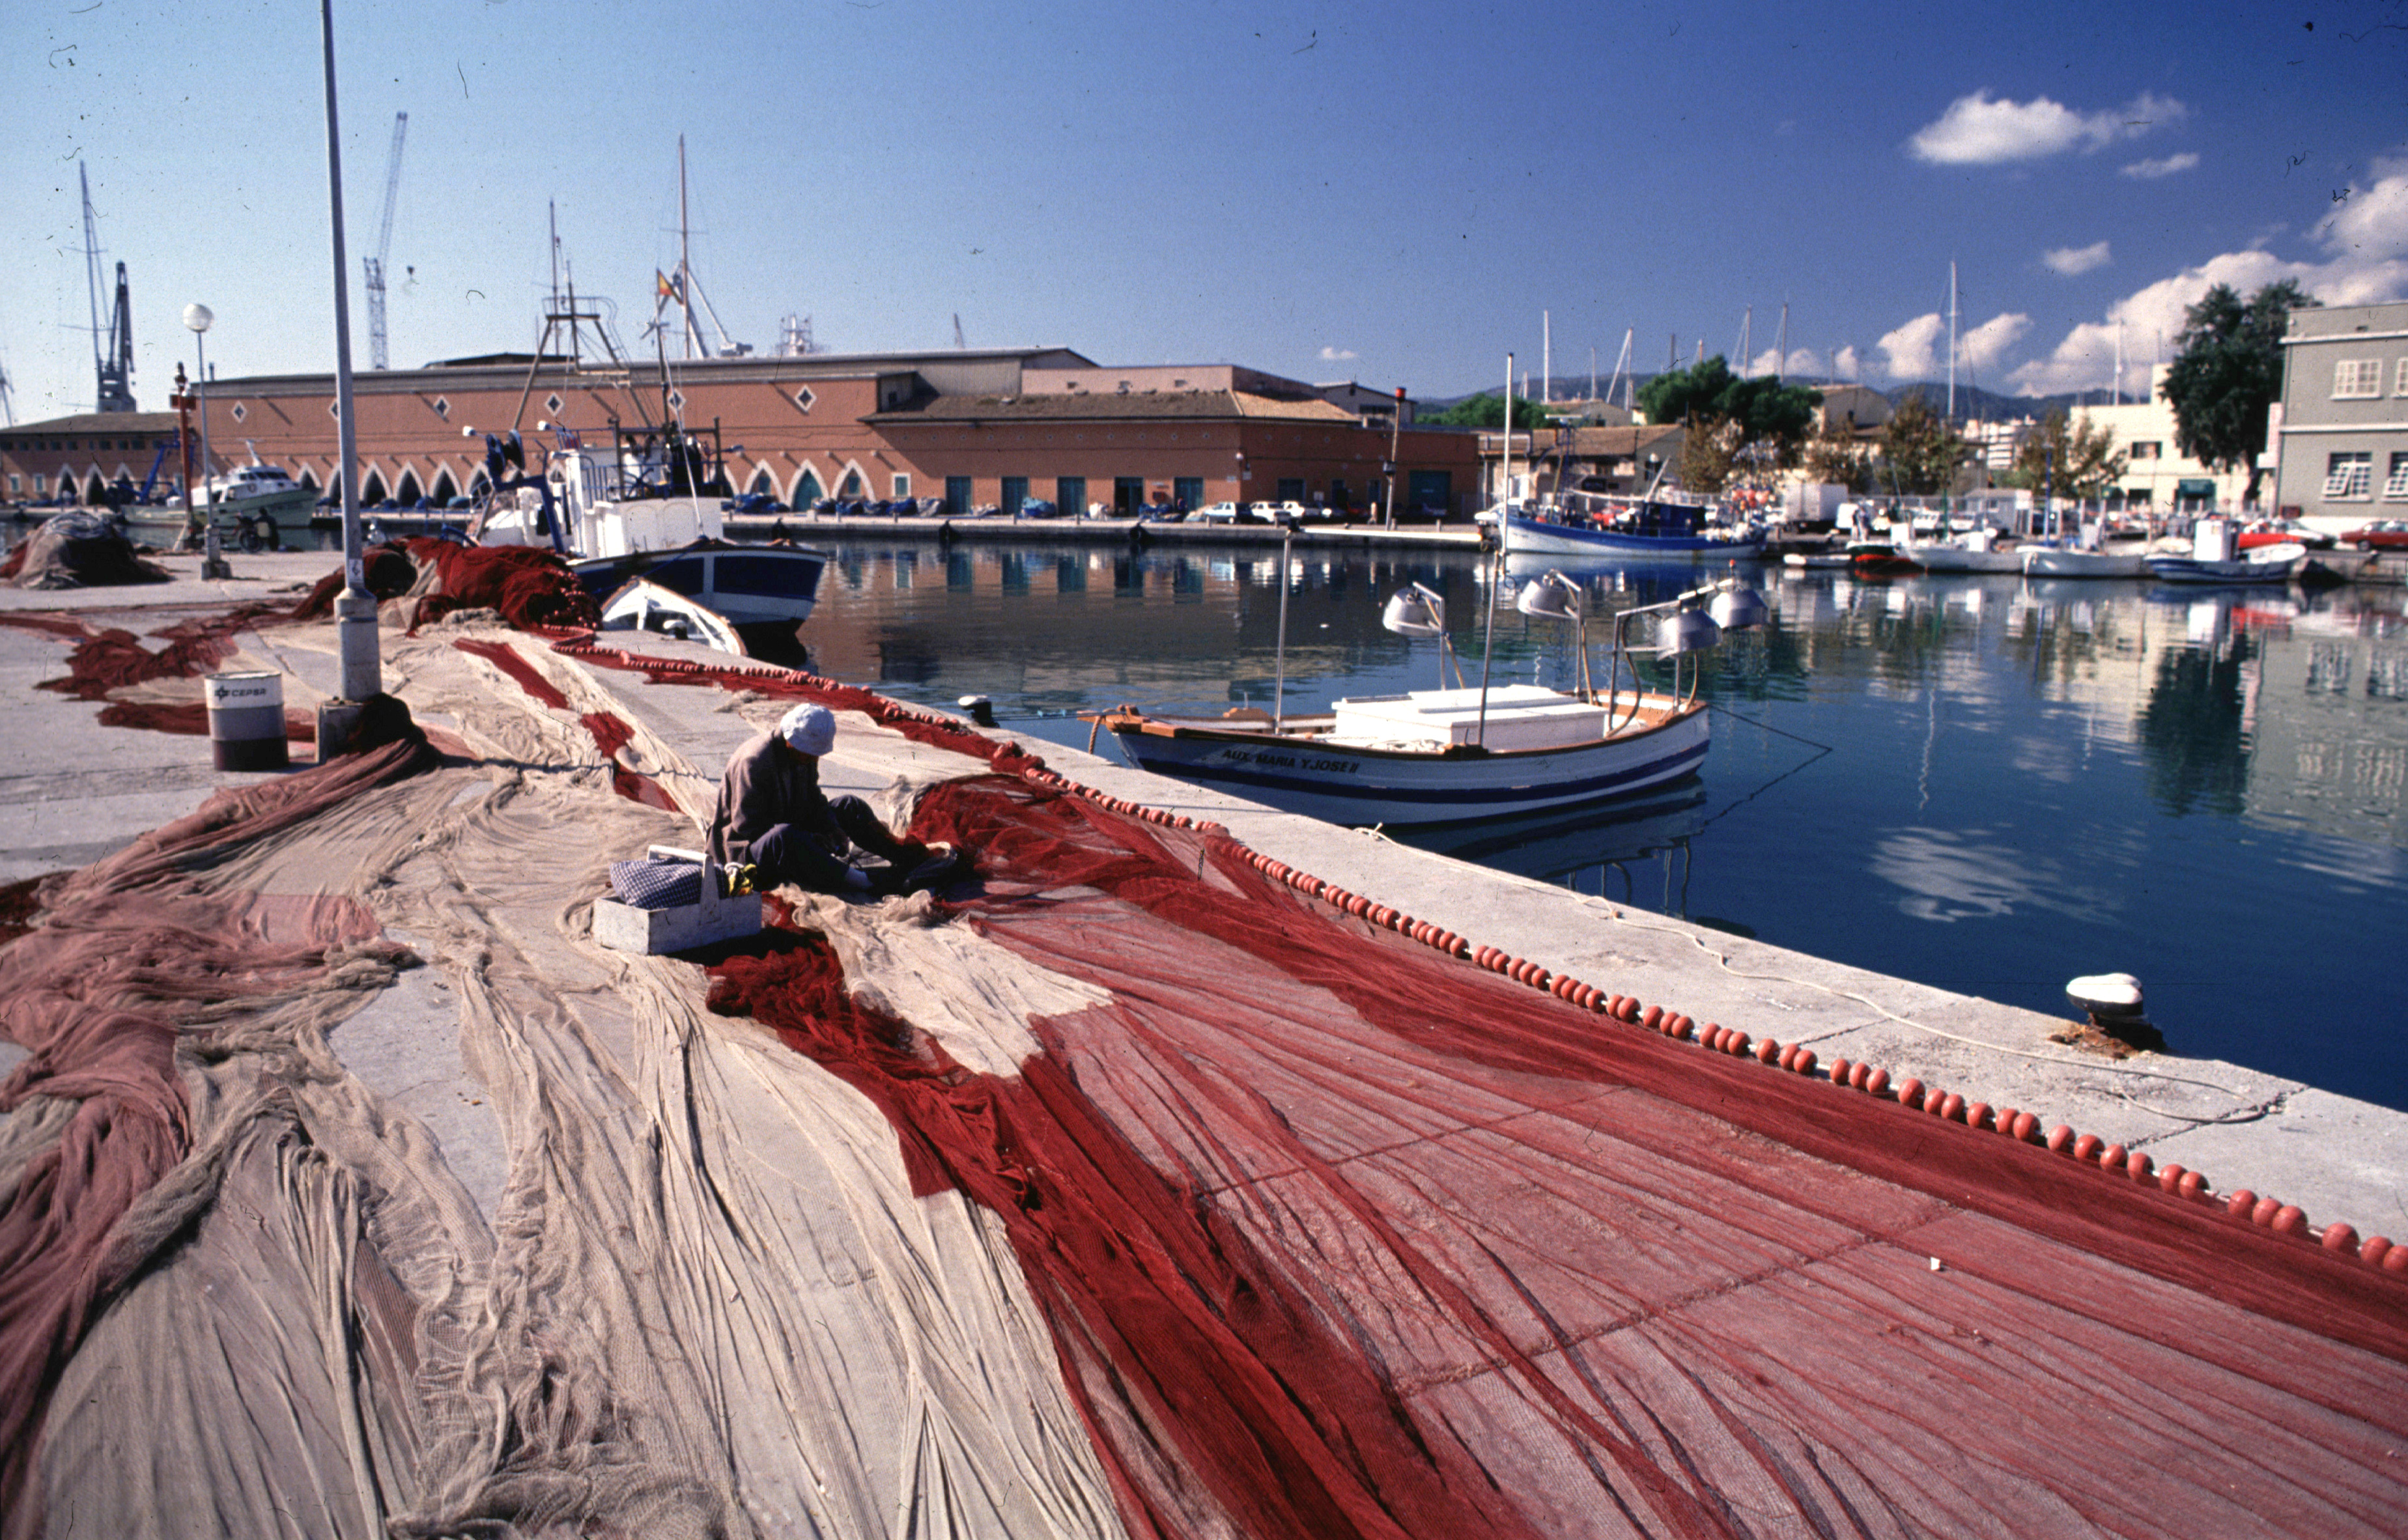 Die Verwaltung des Fischmarktes in der Contramuelle-Mollet im Hafen von Palma wird ausgeschrieben